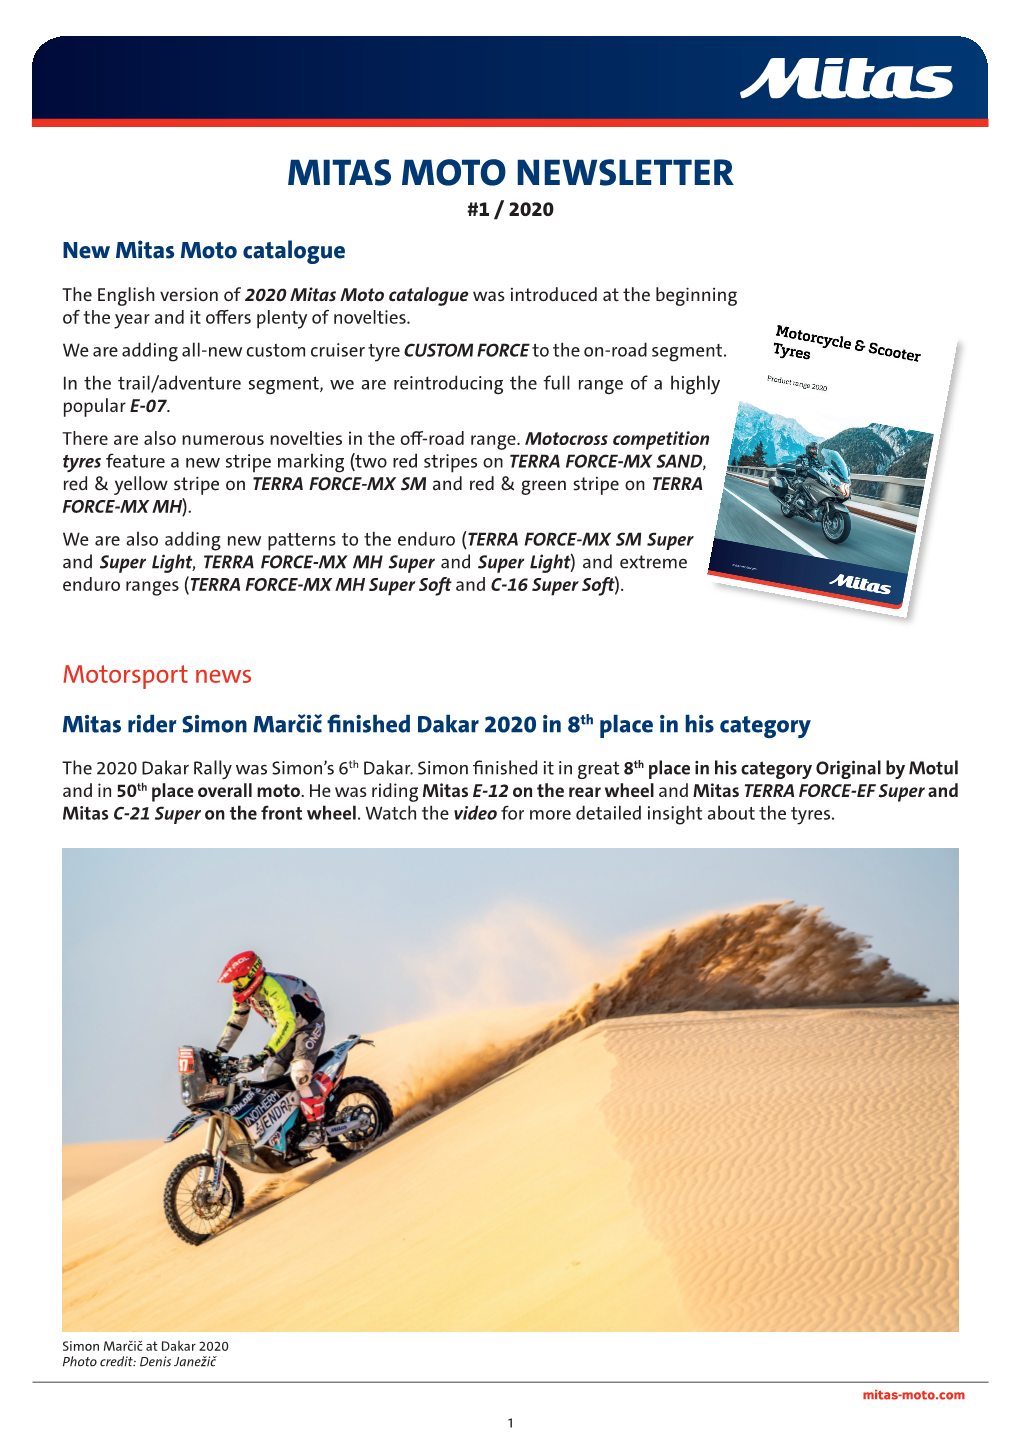 MITAS MOTO NEWSLETTER #1 / 2020 New Mitas Moto Catalogue